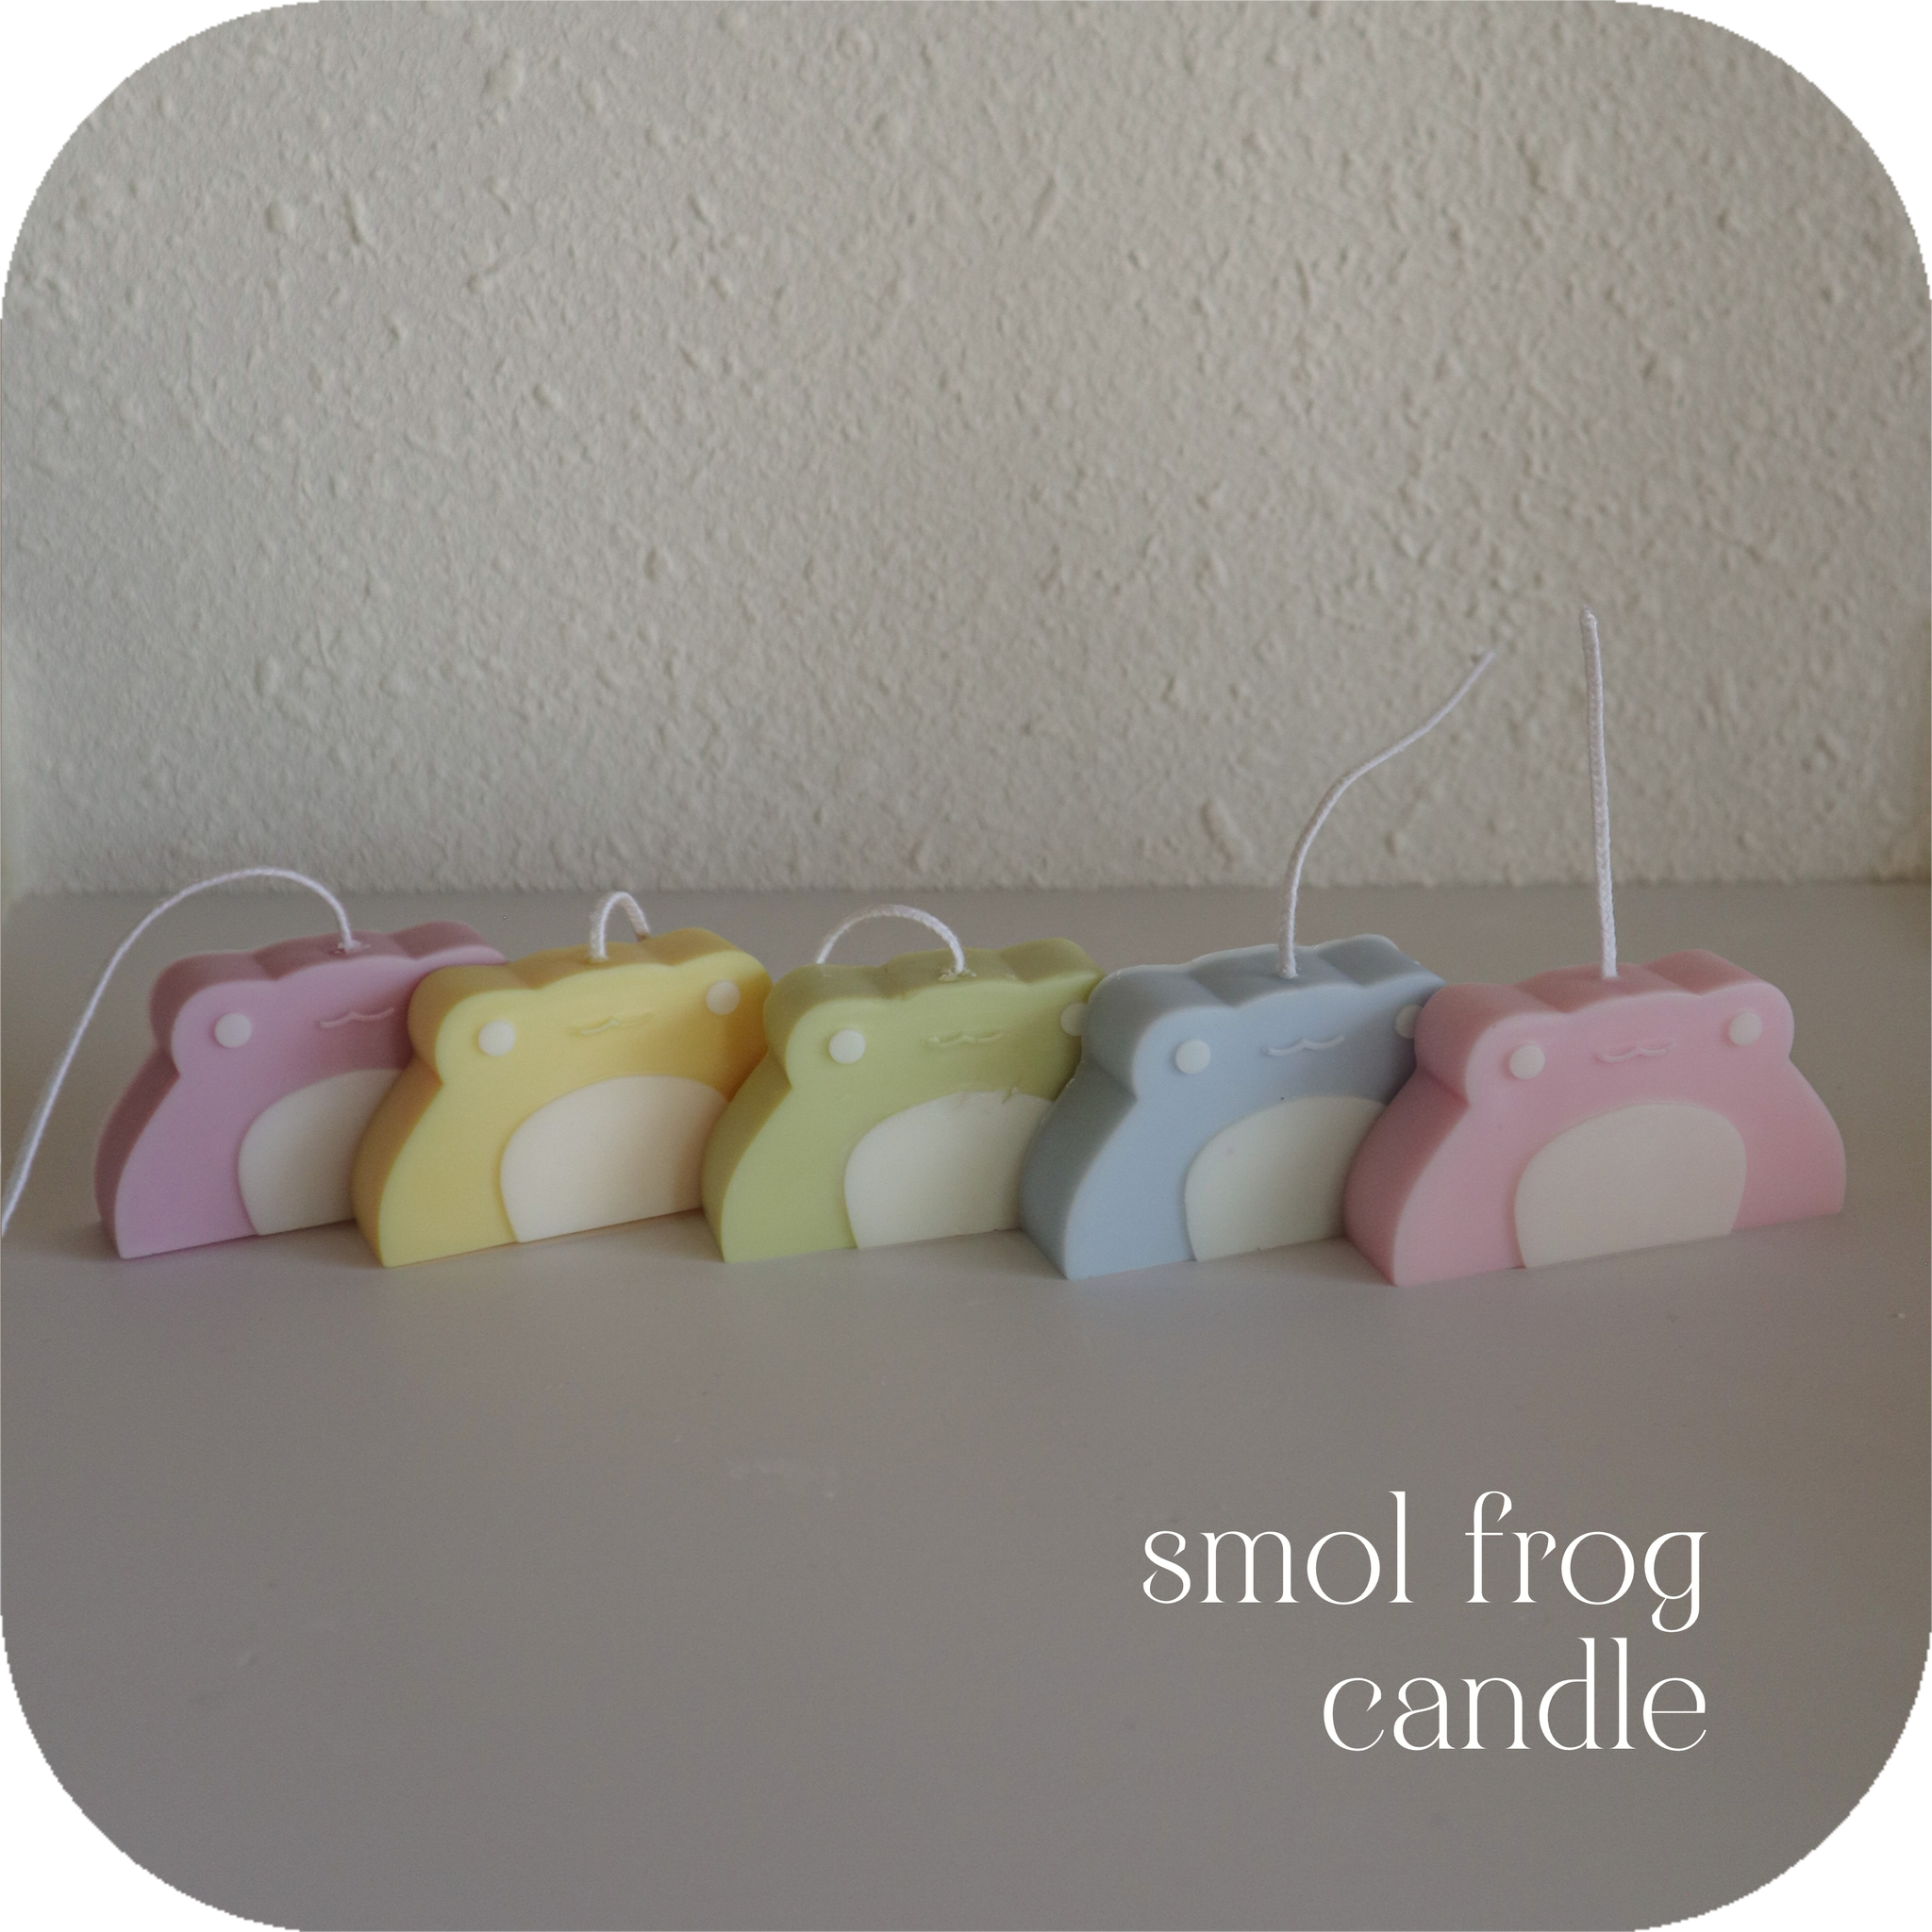 smol frog candle